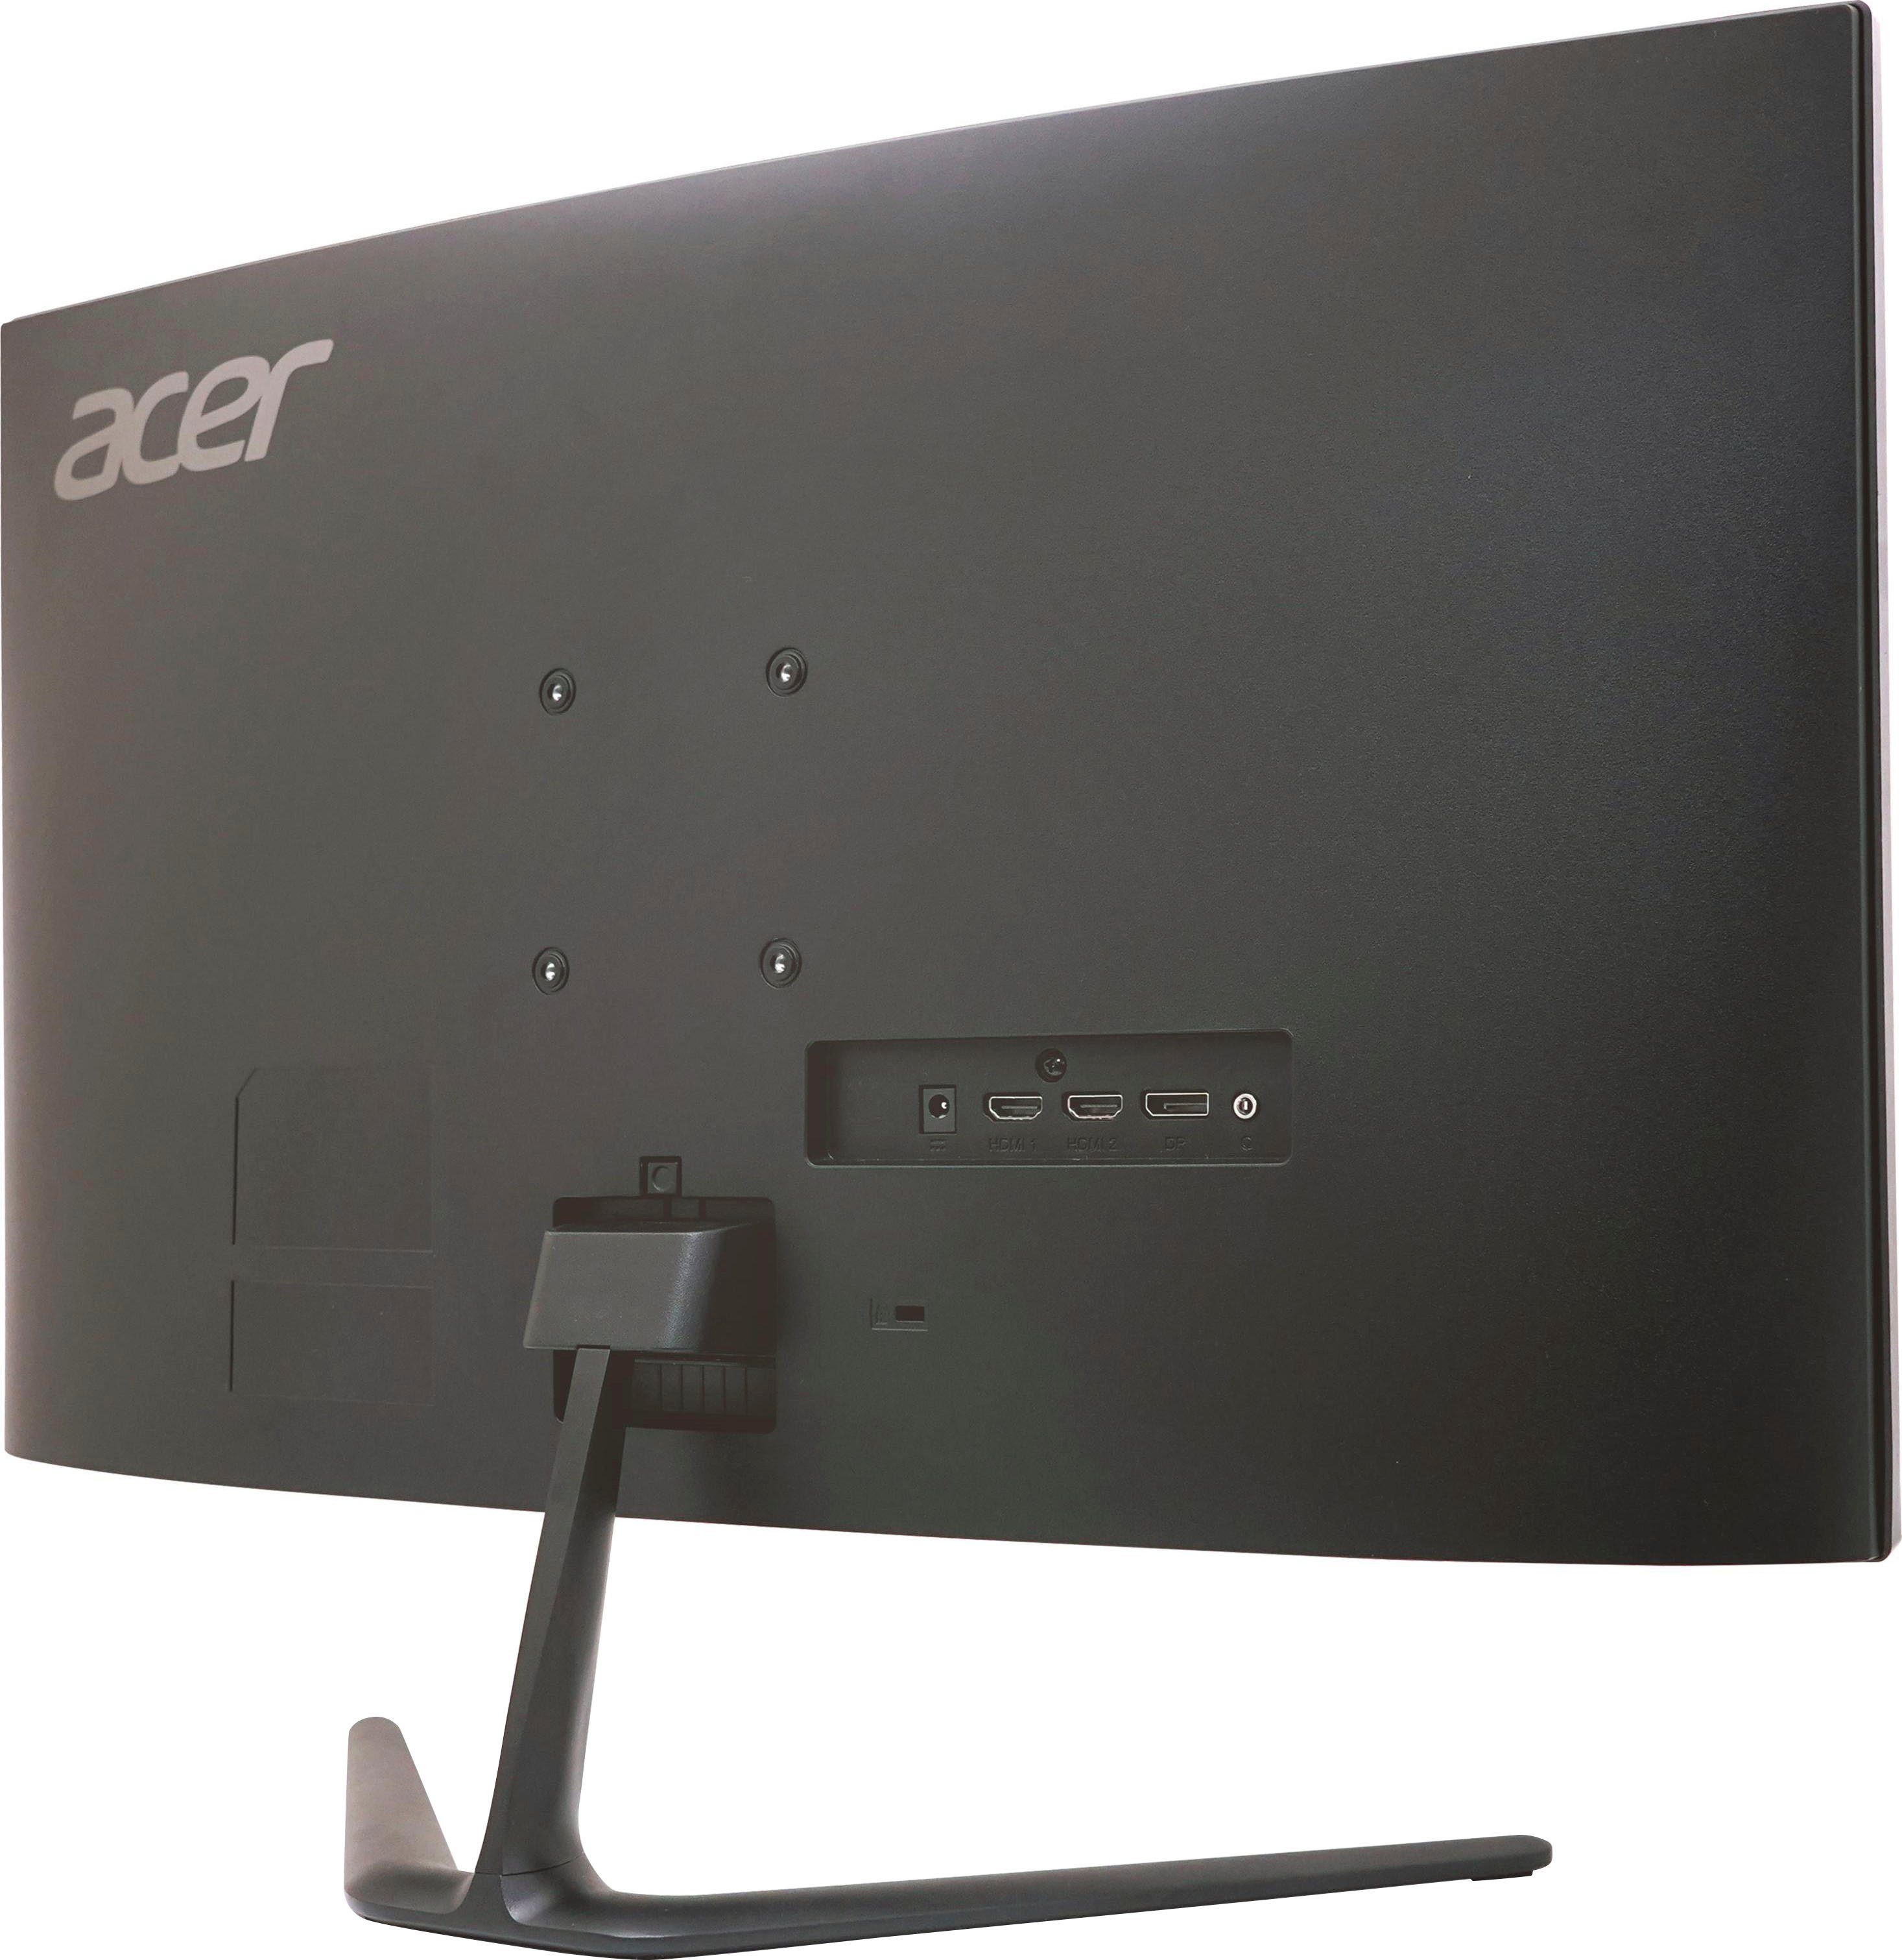 Acer Nitro ED270U P2 x VA 1 cm/27 170 Hz, ms ", Reaktionszeit, (69 WQHD, 1440 LED) Curved-Gaming-LED-Monitor 2560 px